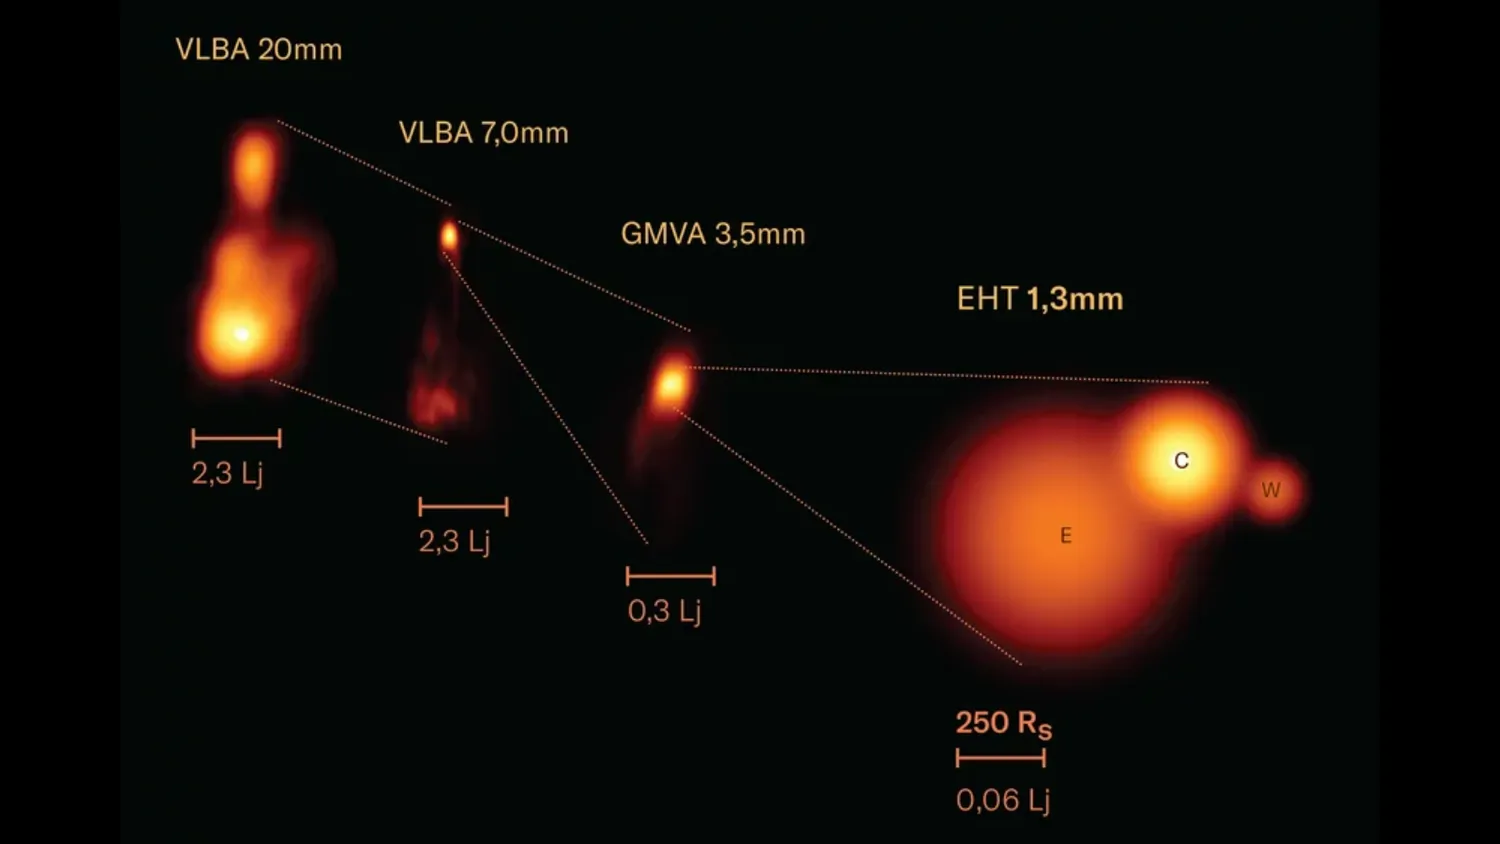 Mehr über den Artikel erfahren Event Horizon Telescope spürt Strahlen auf, die aus einem nahen supermassiven schwarzen Loch ausbrechen